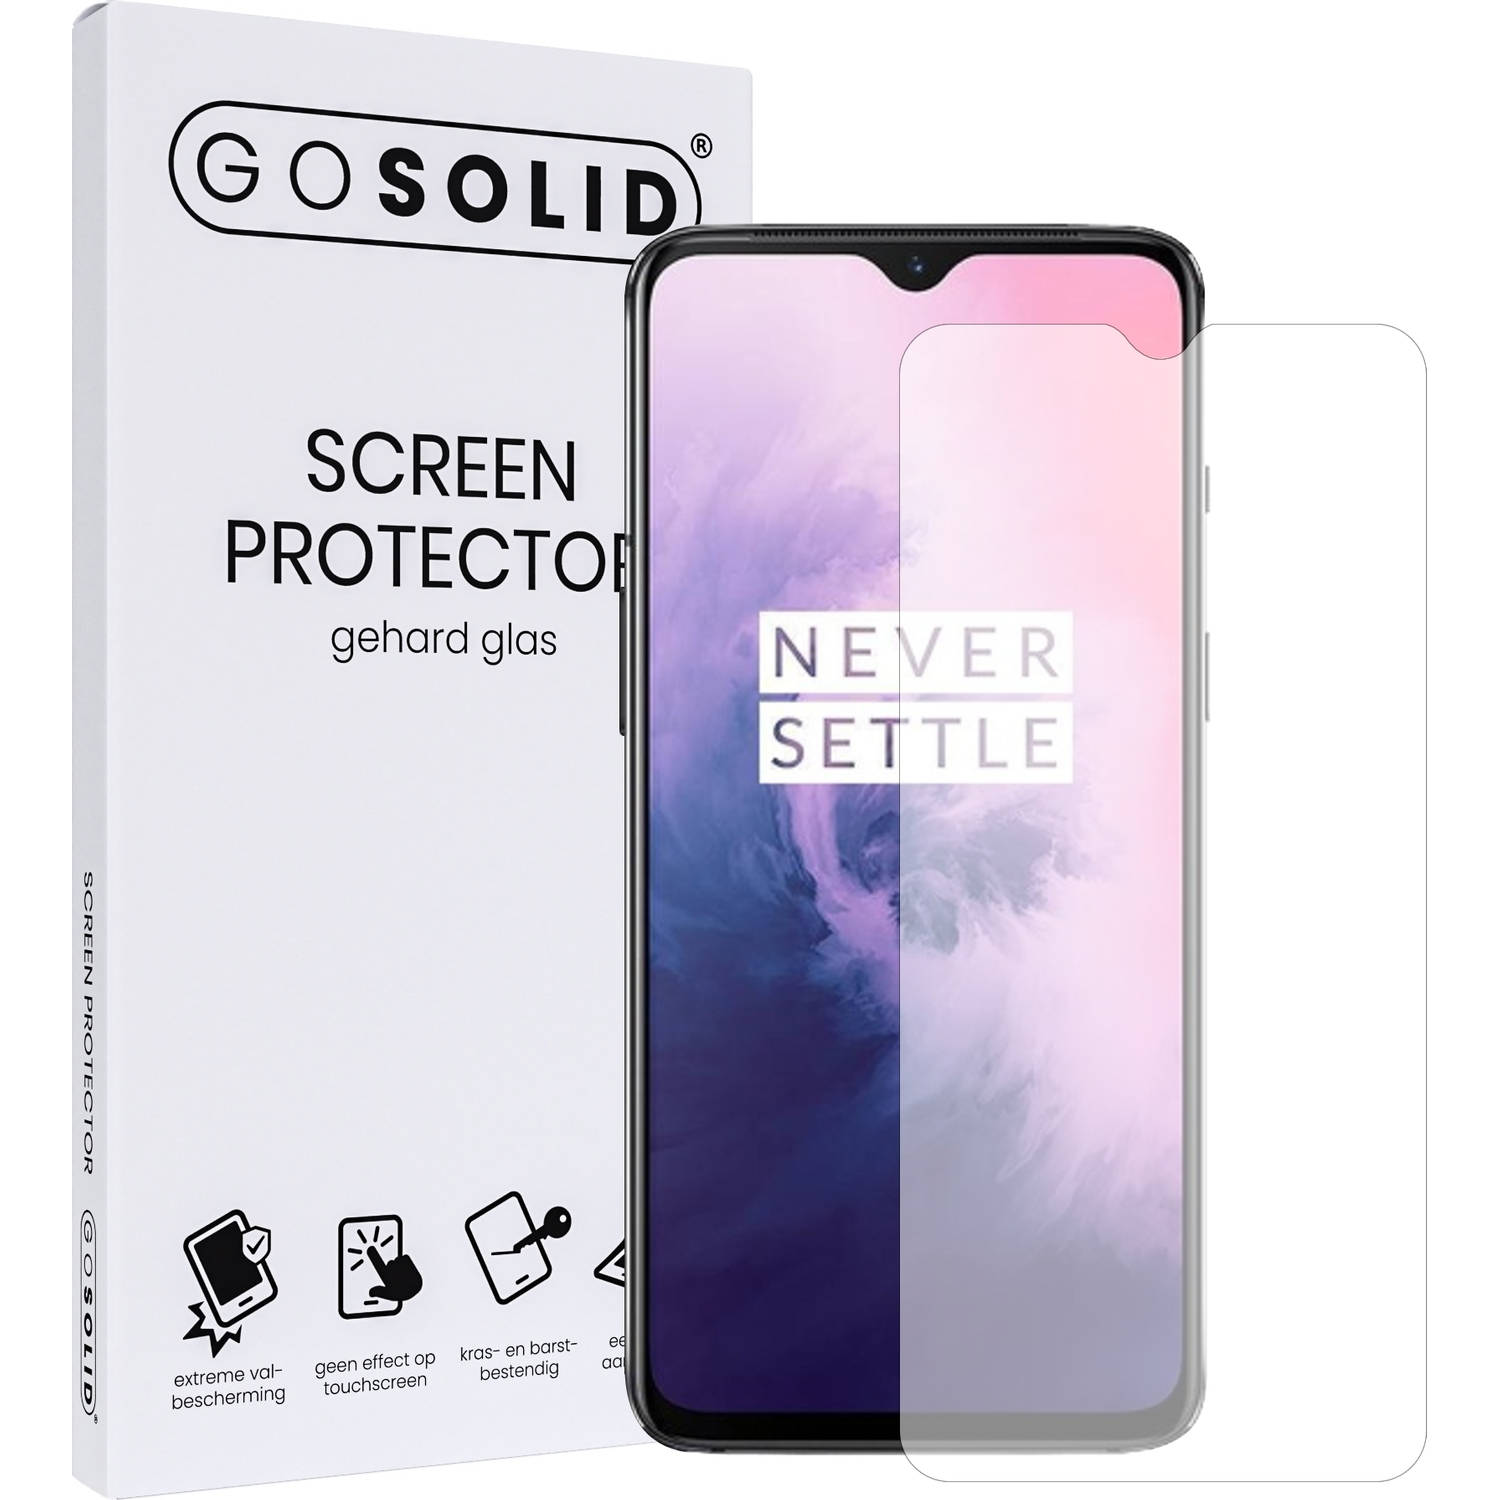 GO SOLID! Screenprotector voor Oneplus 7 gehard glas